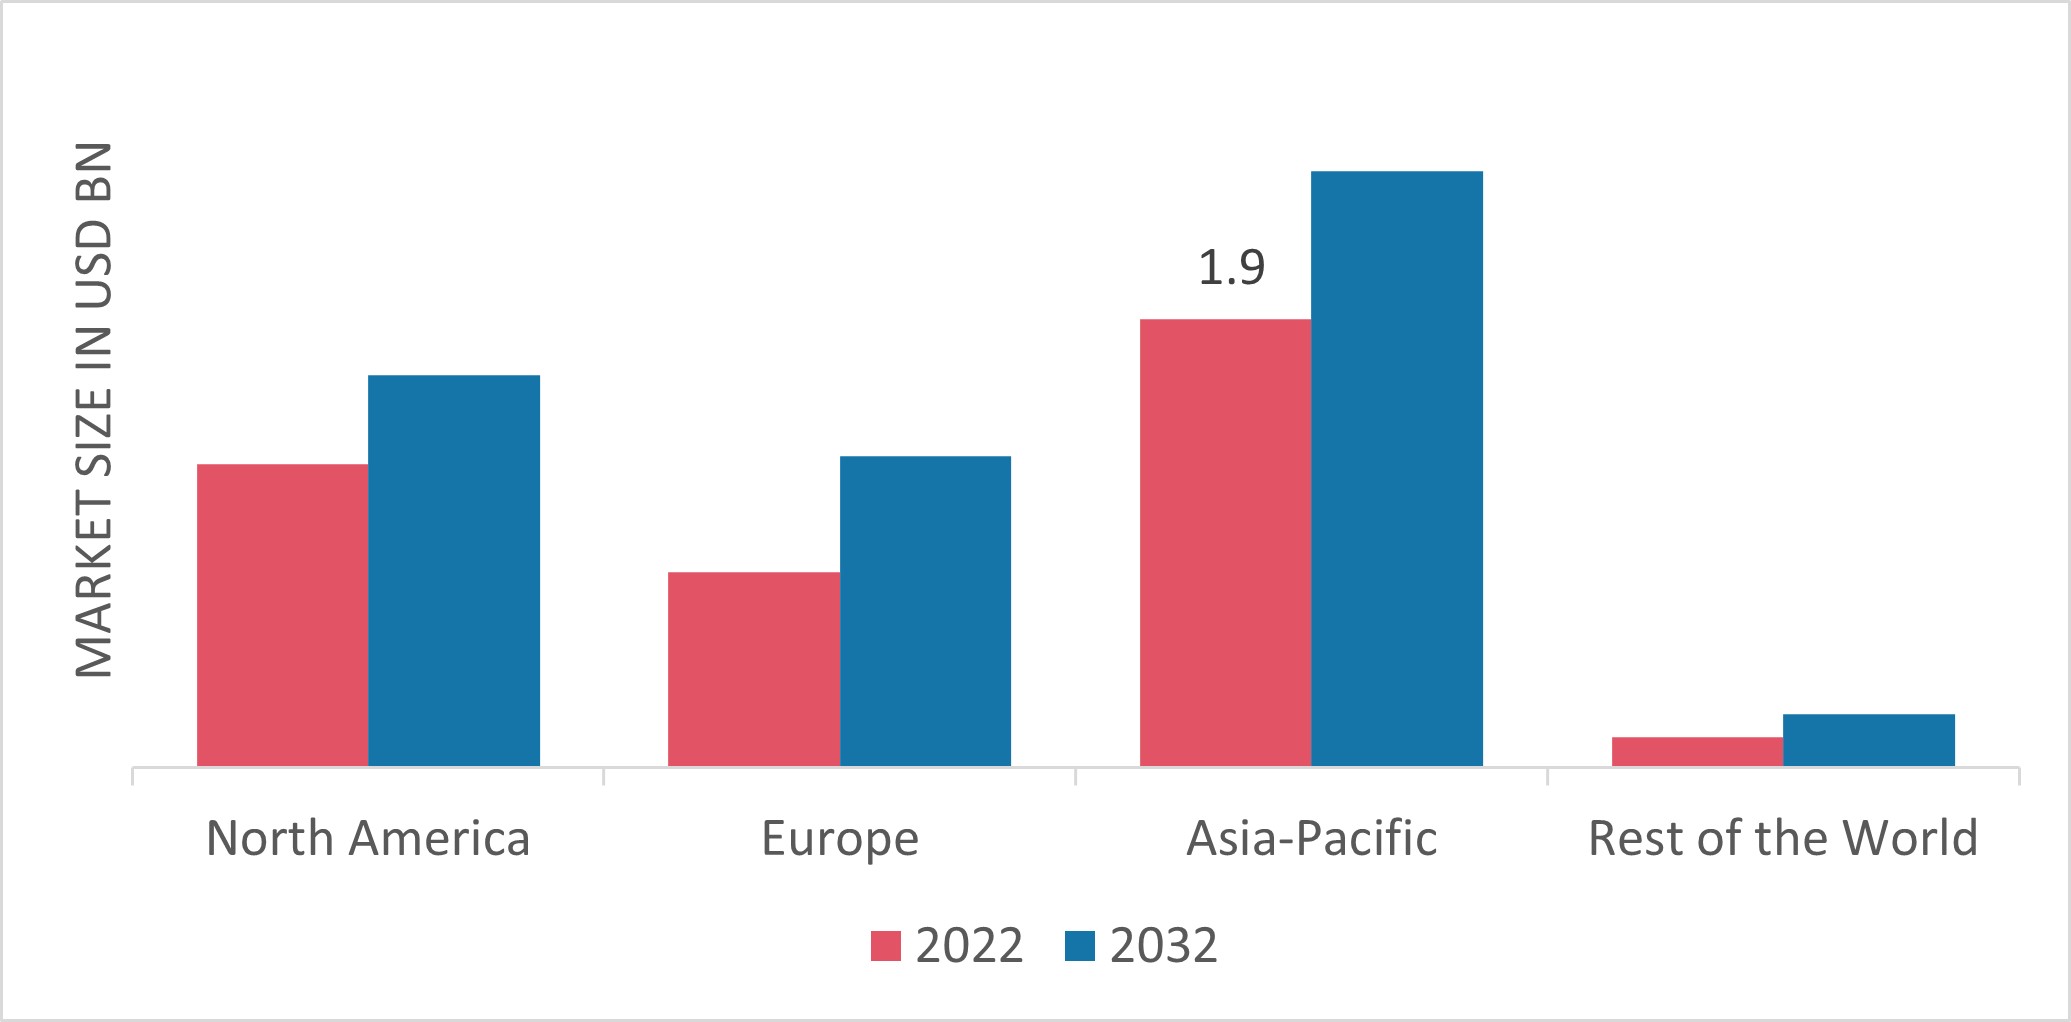 Acrylic Fiber Market Share by Region 2022